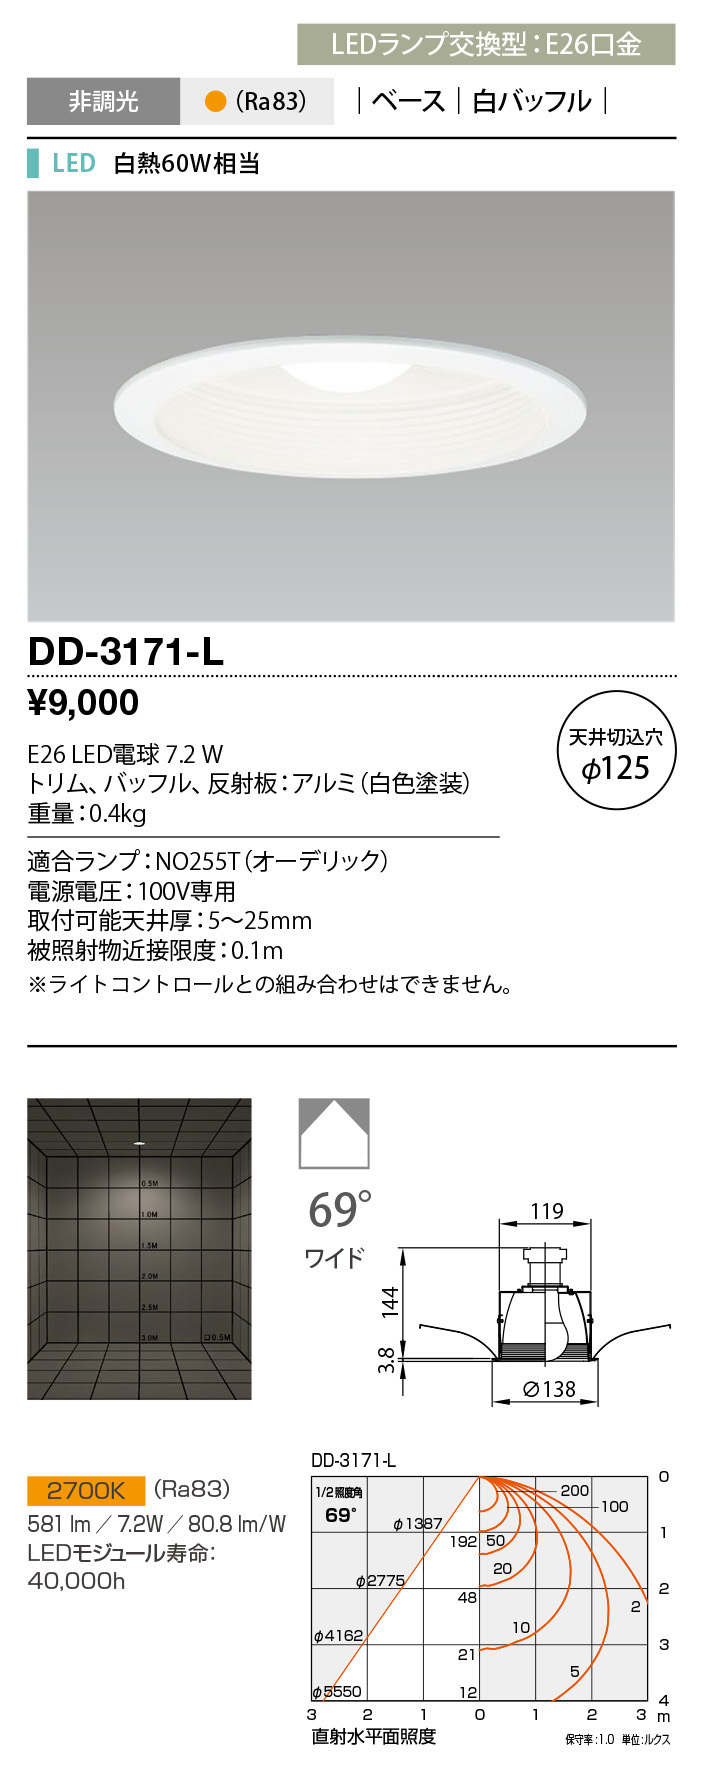 DD-3171-L